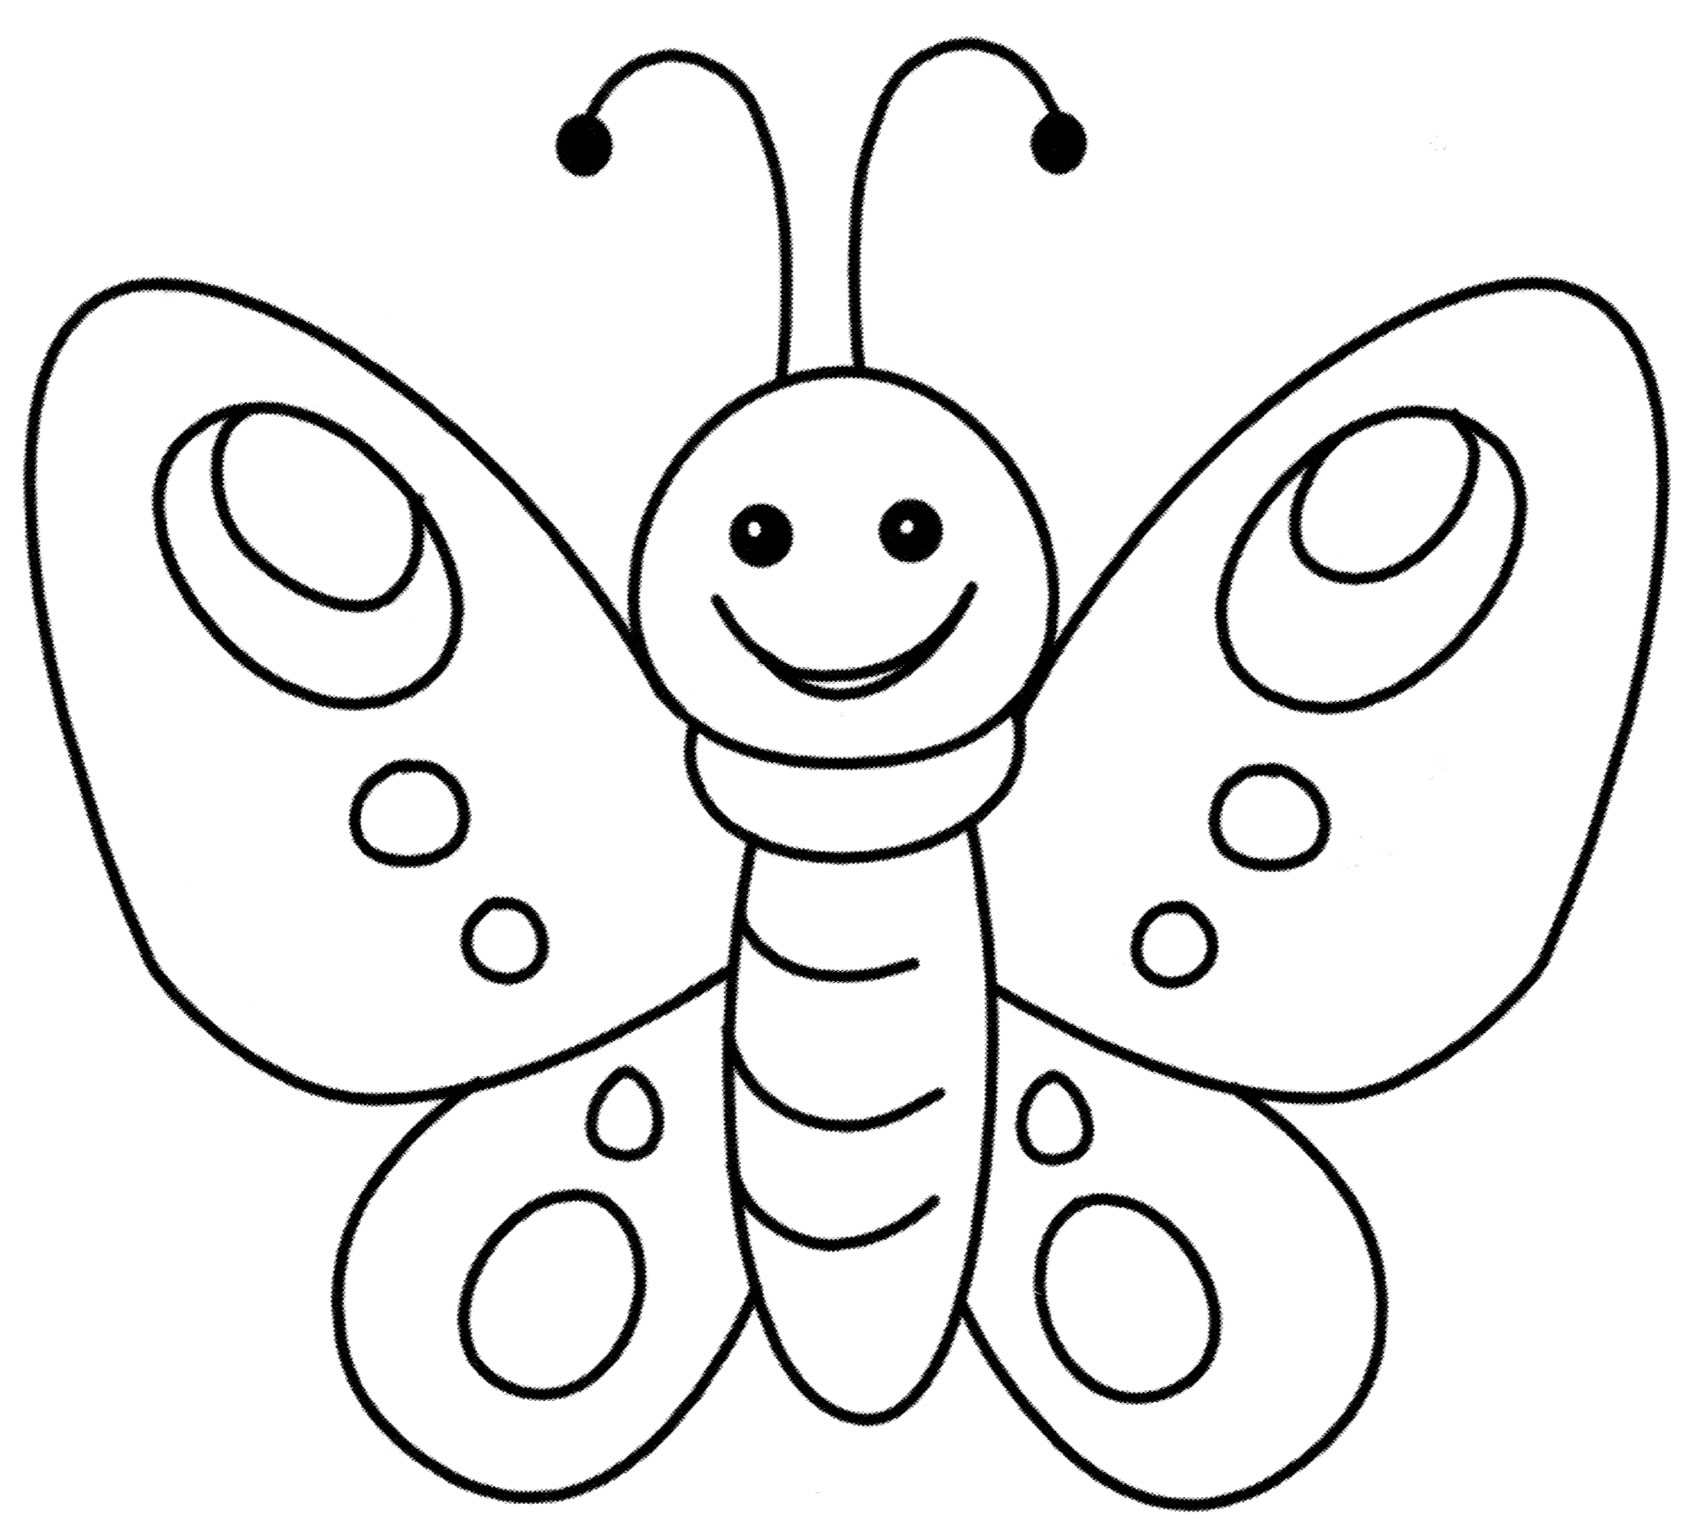 Раскраска бабочка качество печати для взрослых для взрослых детей эскиз черновик черный белый